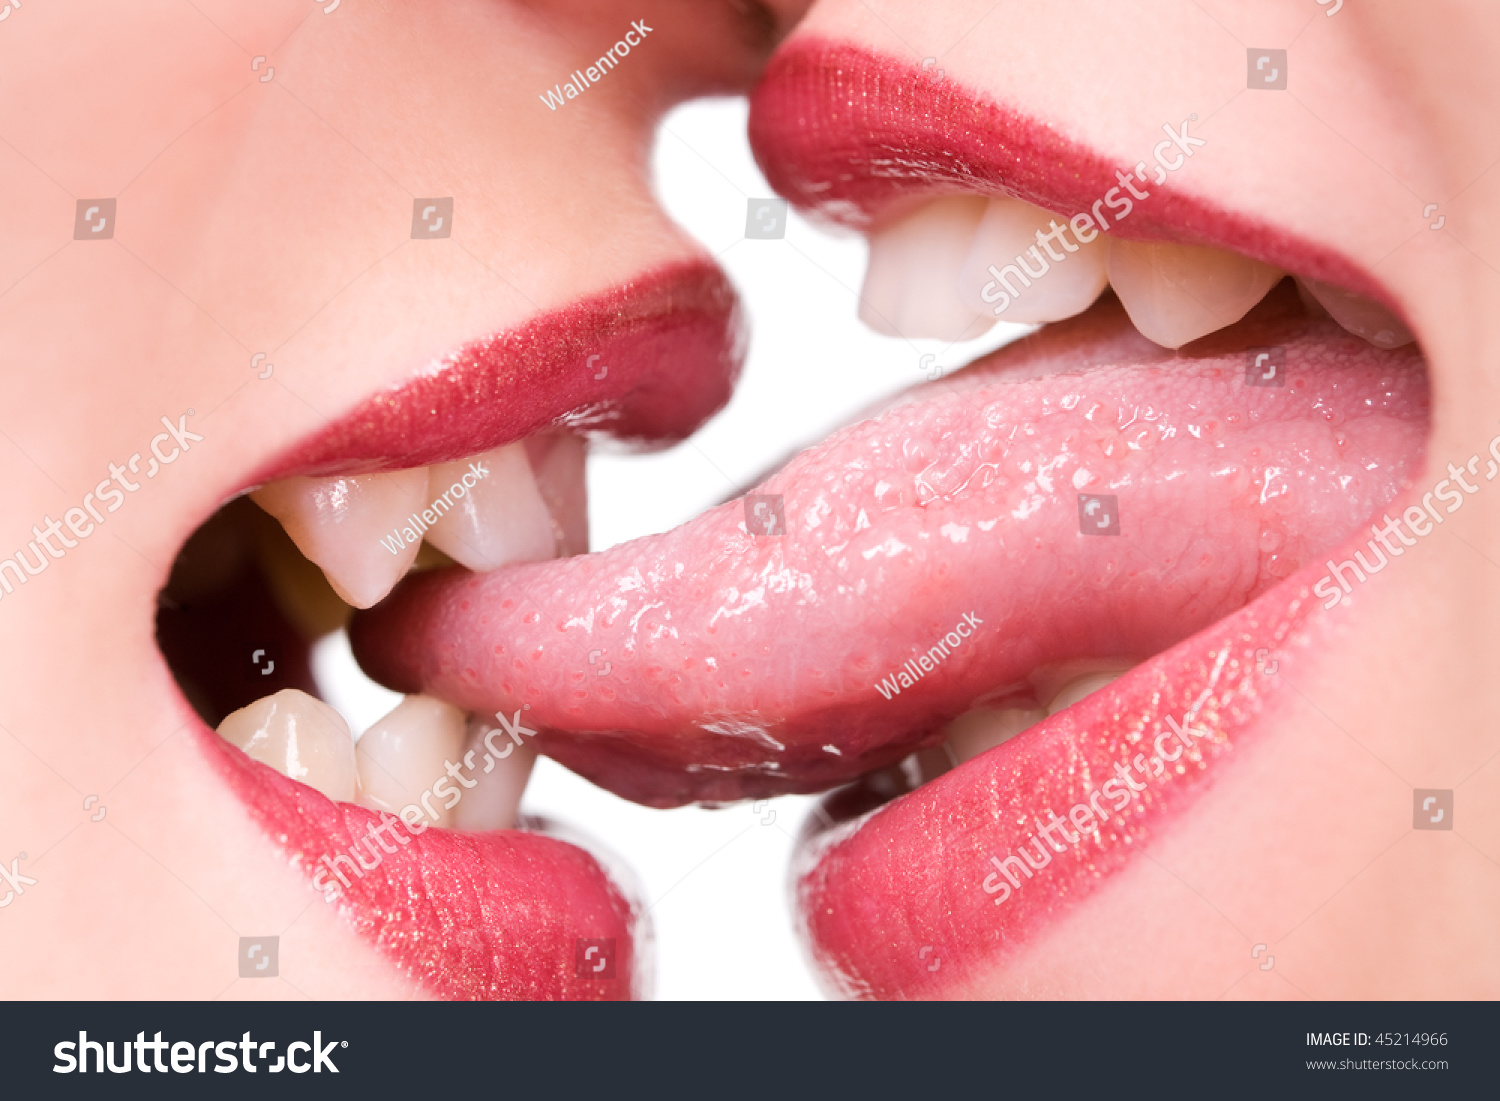 Девушка лижет руку. Губы с языком фото. Поцелуй в губы. Женский поцелуй. Поцелуй с языком.